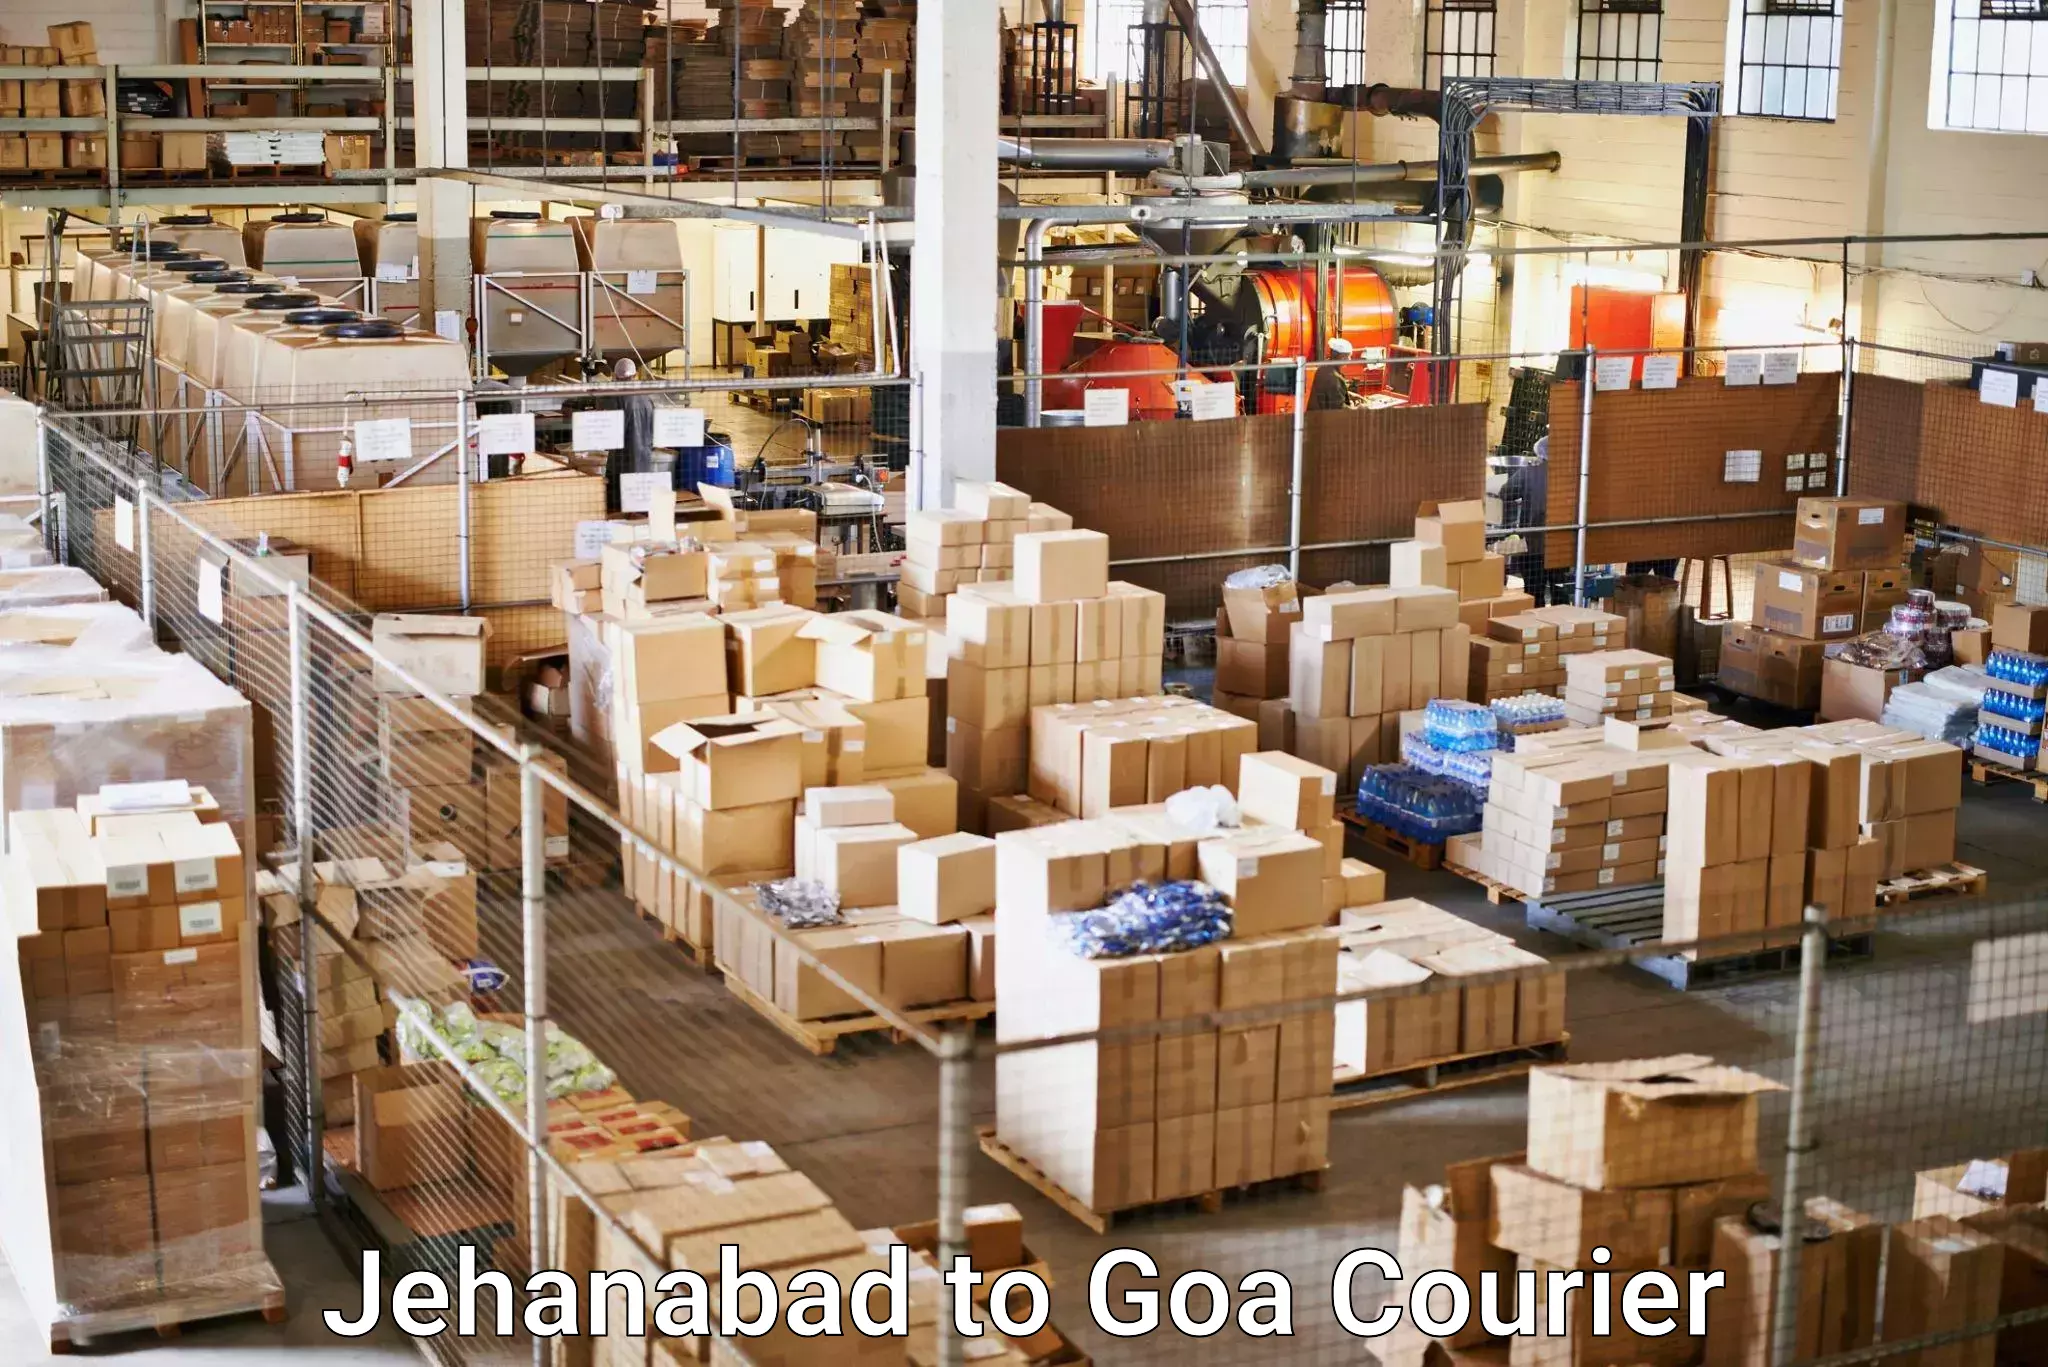 Express logistics service Jehanabad to Bardez